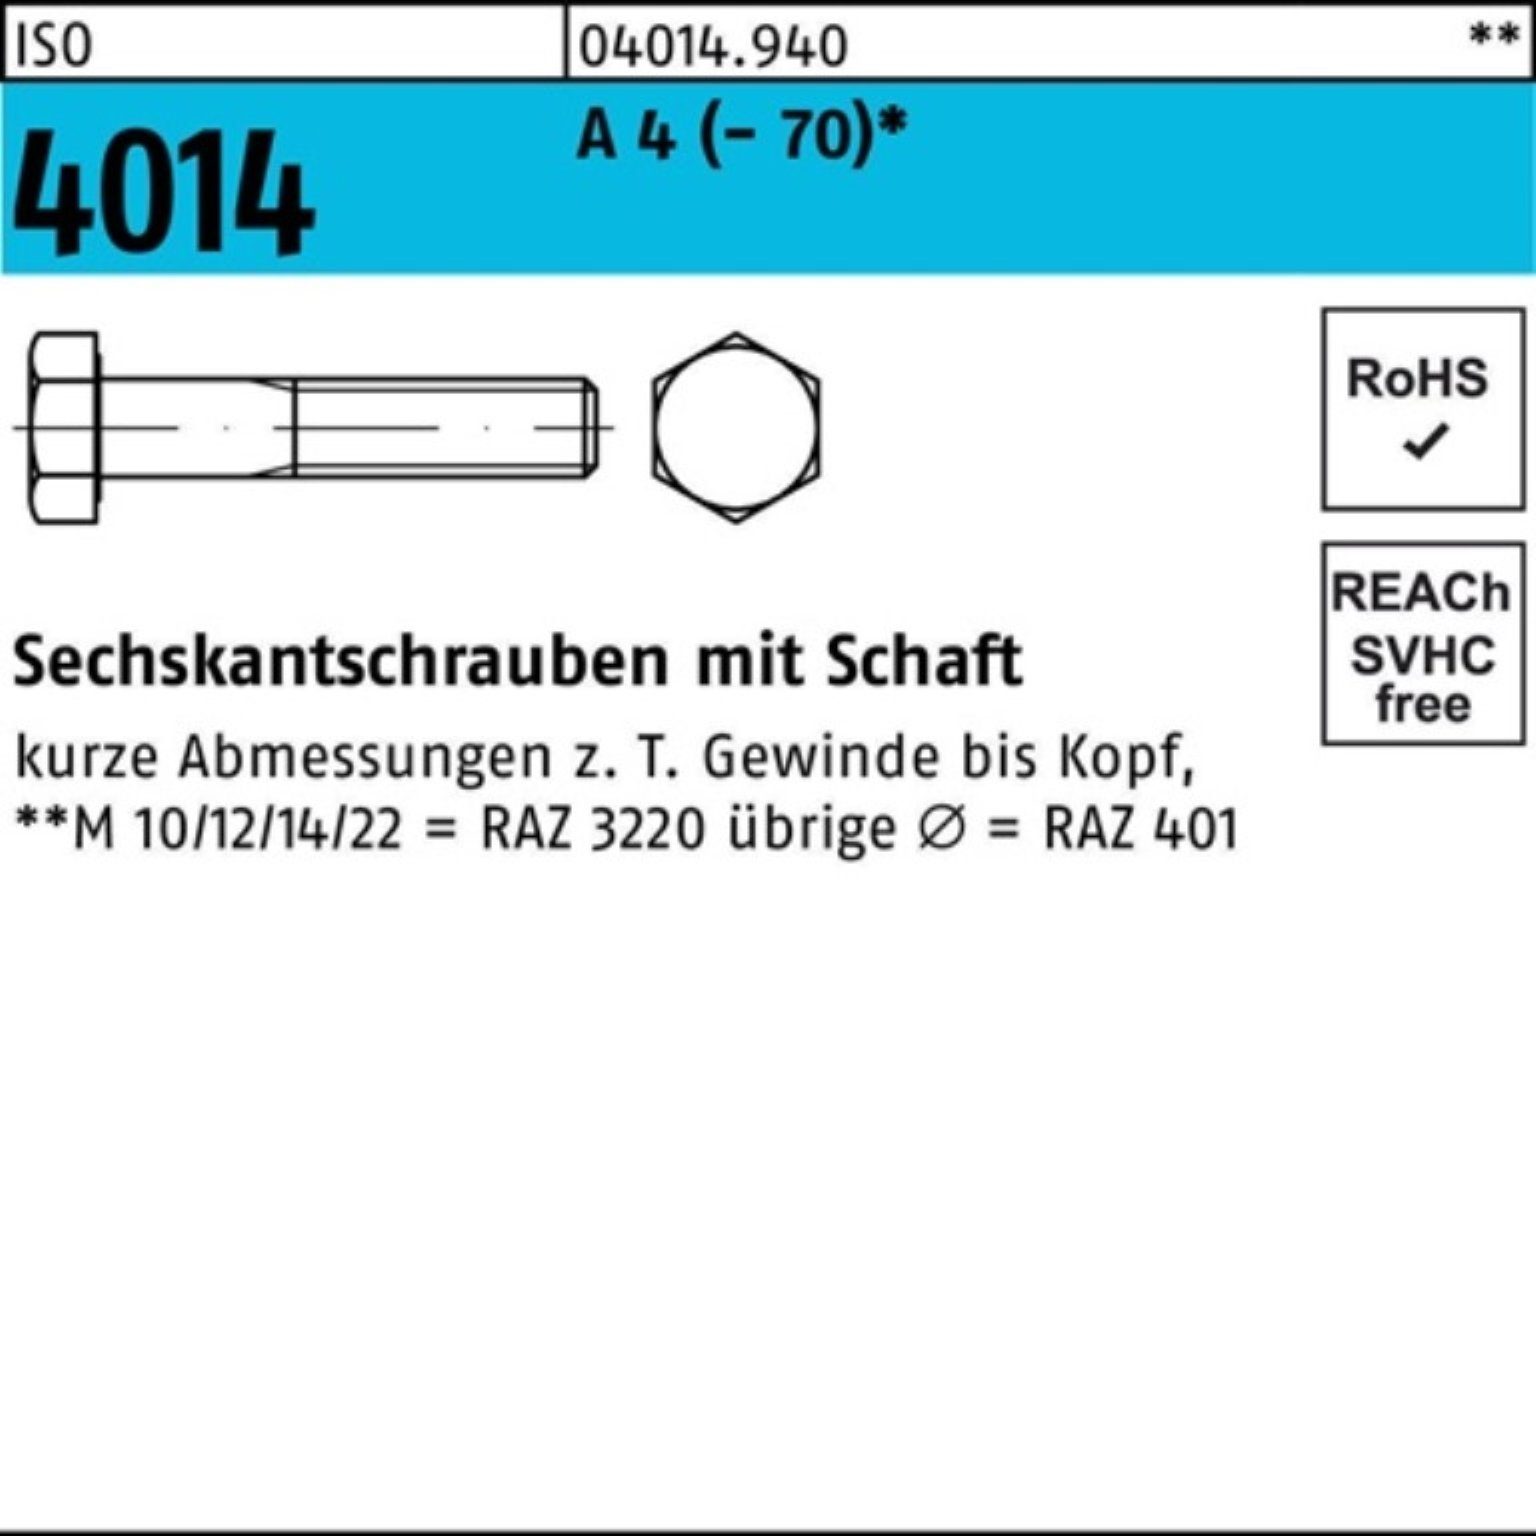 Bufab Sechskantschraube 100er Pack Sechskantschraube ISO 4014 Schaft M27x 100 A 4 (70) 1 St